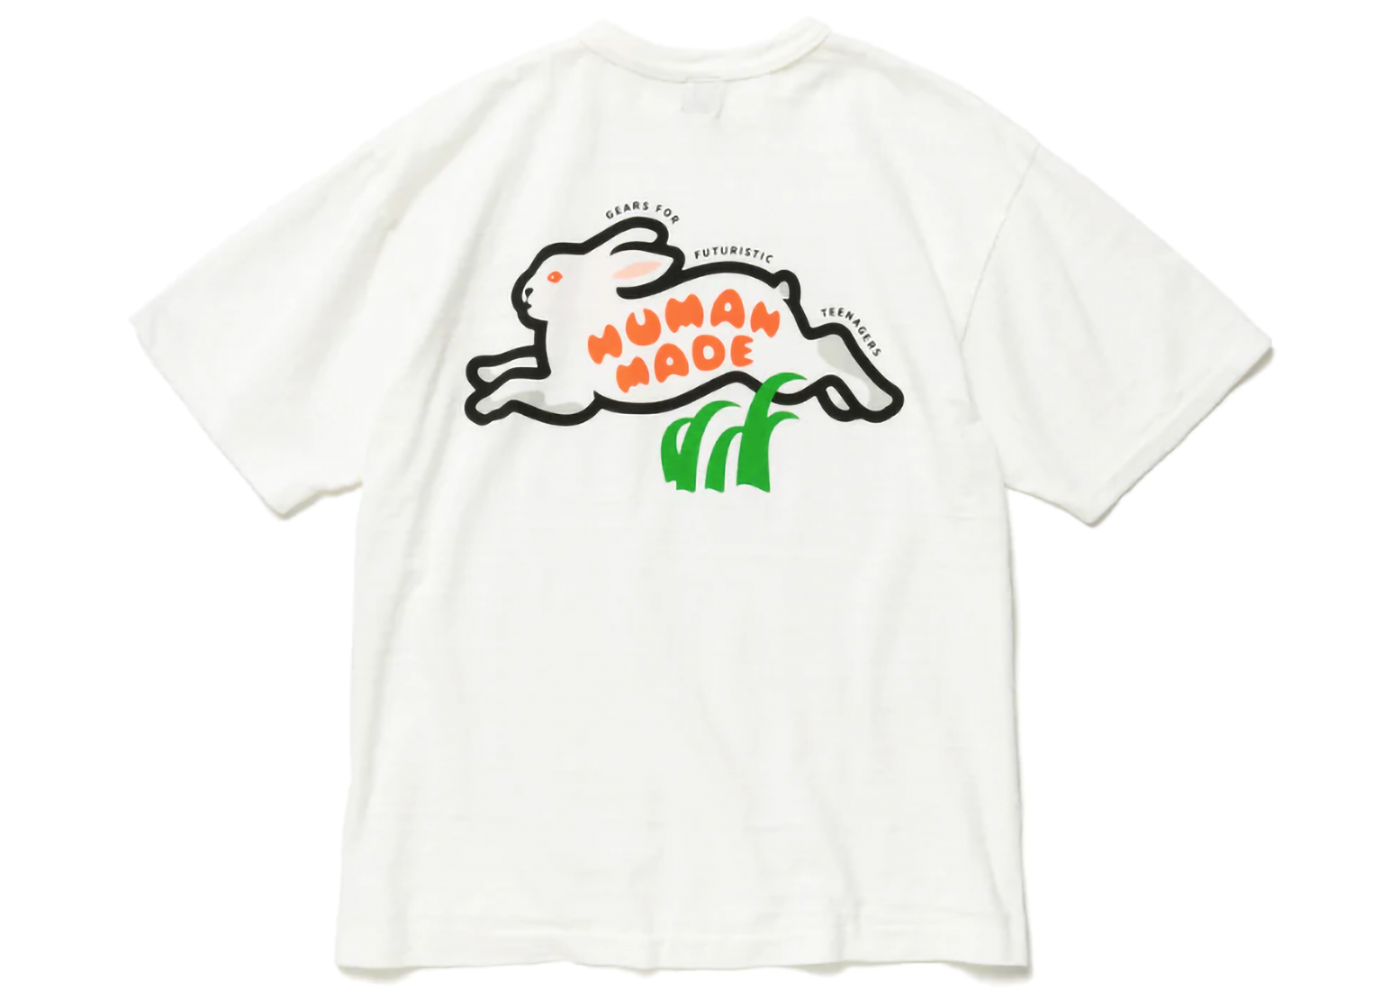 Human Made Rabbit Graphic #2 T-Shirt White